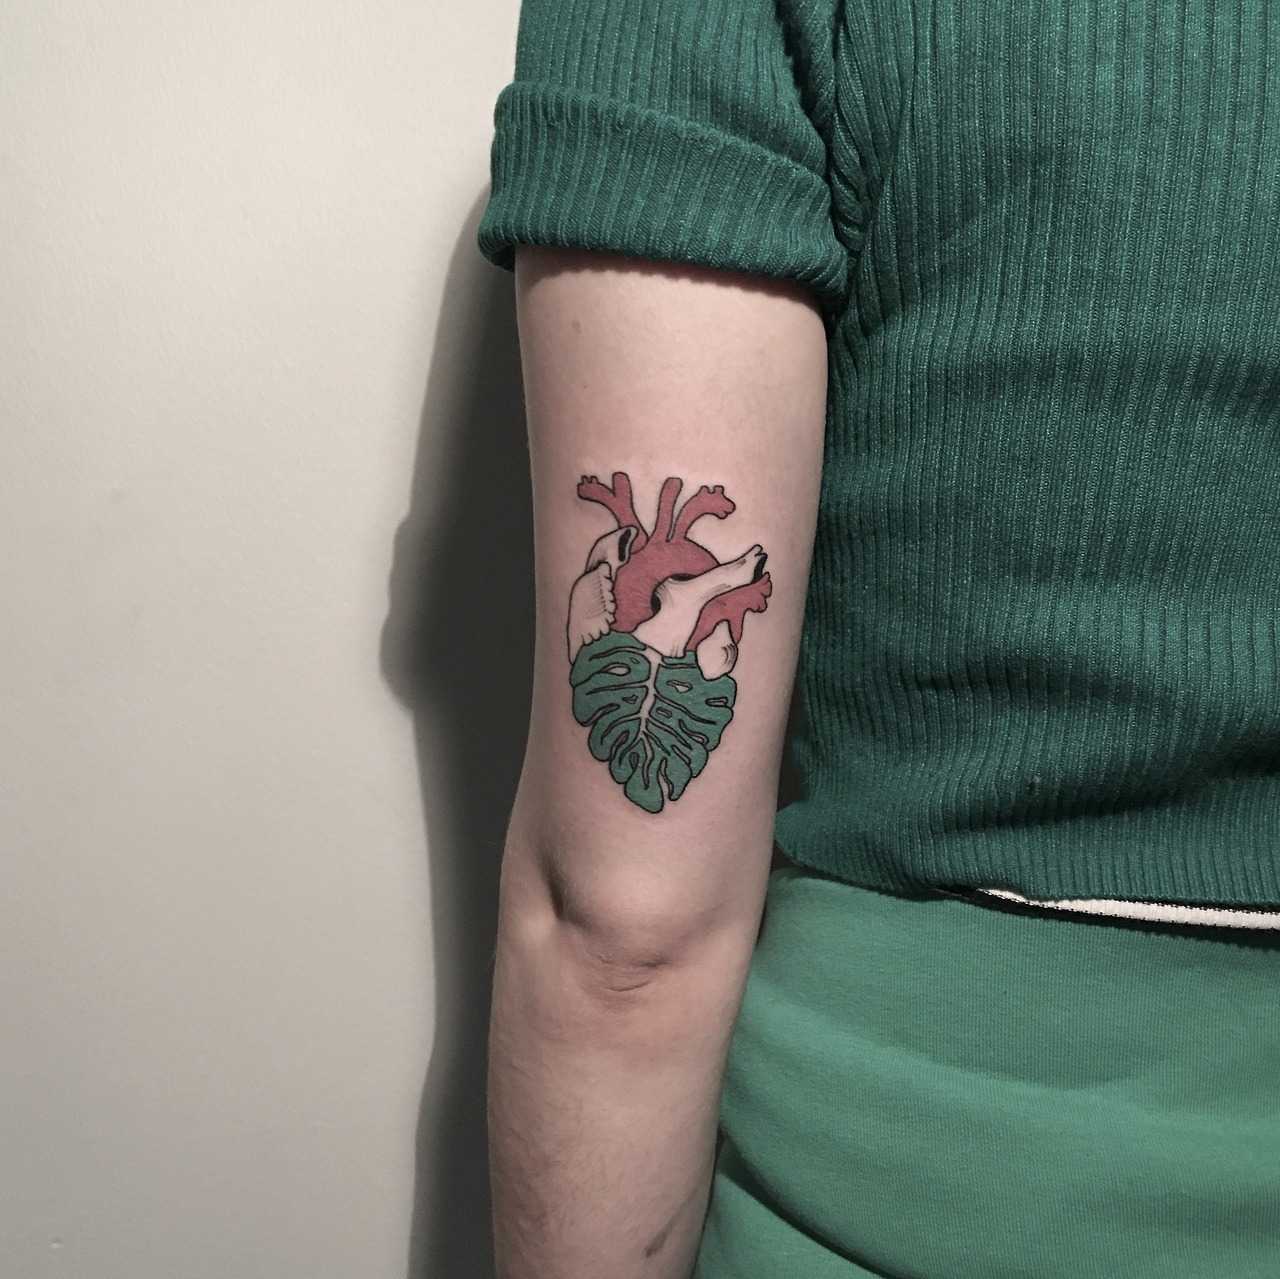 Heartleaf tattoo by Berkin Dönmez